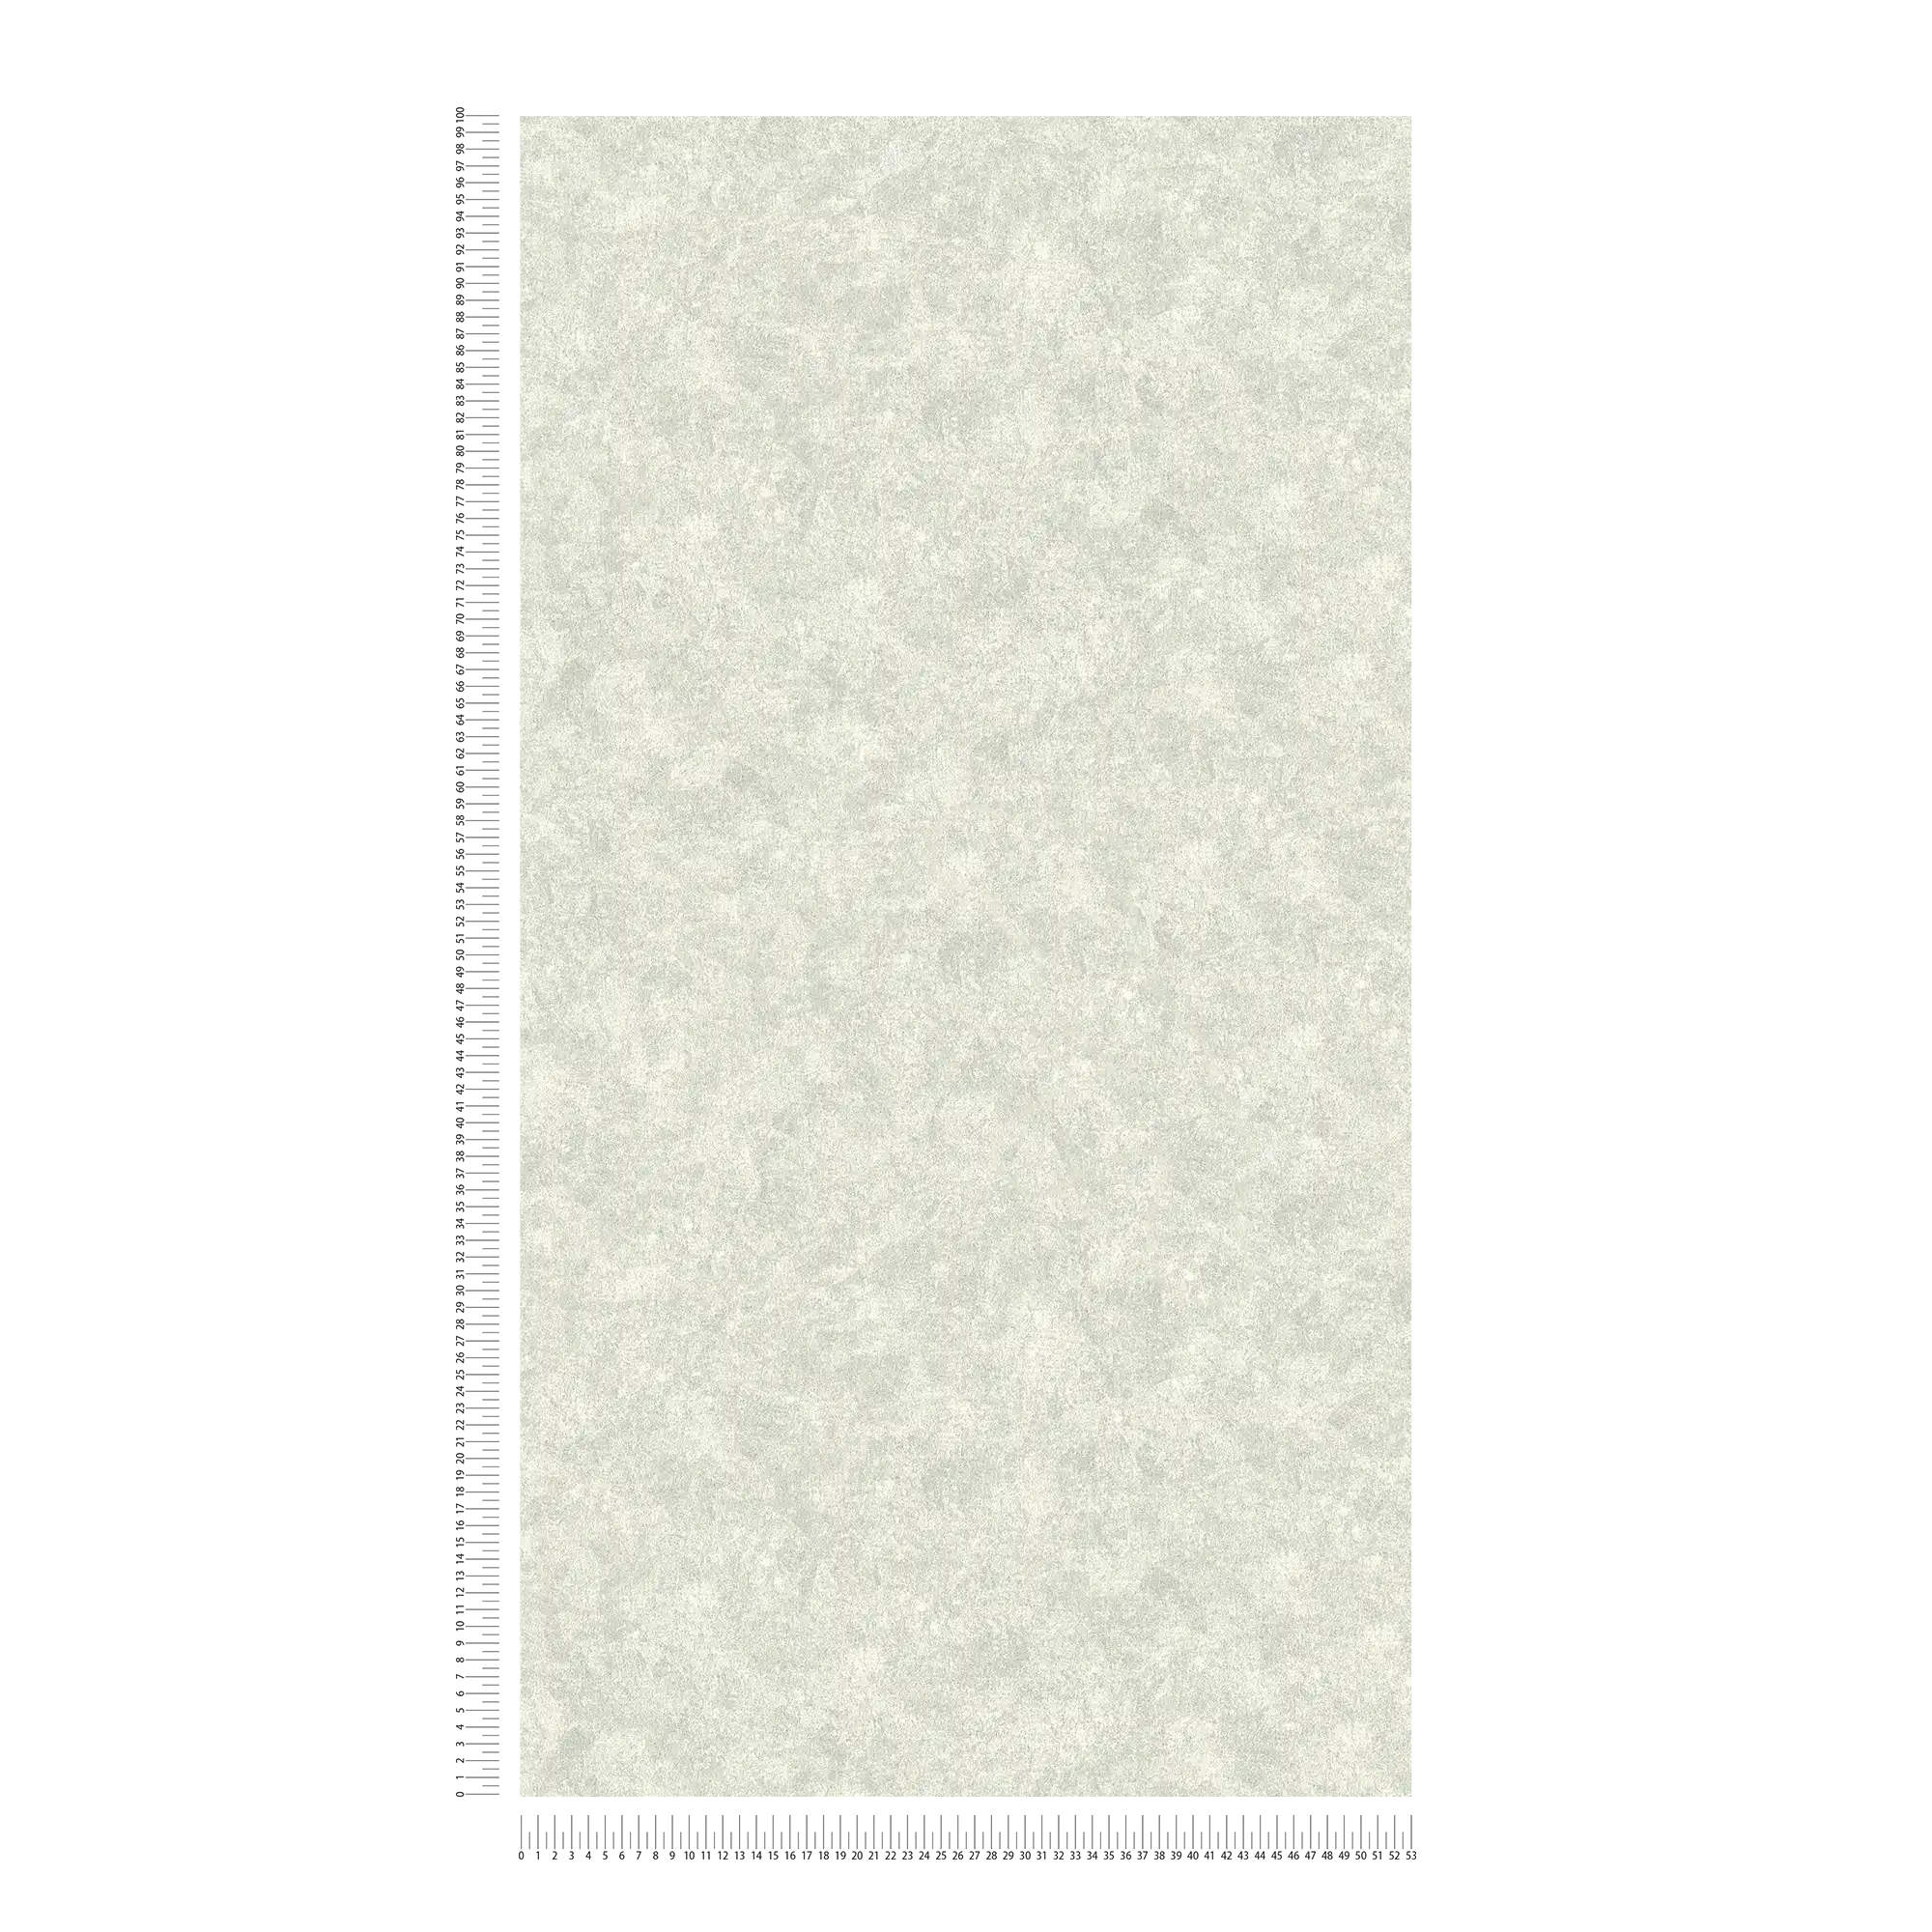             Carta da parati liscia con struttura a chiazze - grigio
        